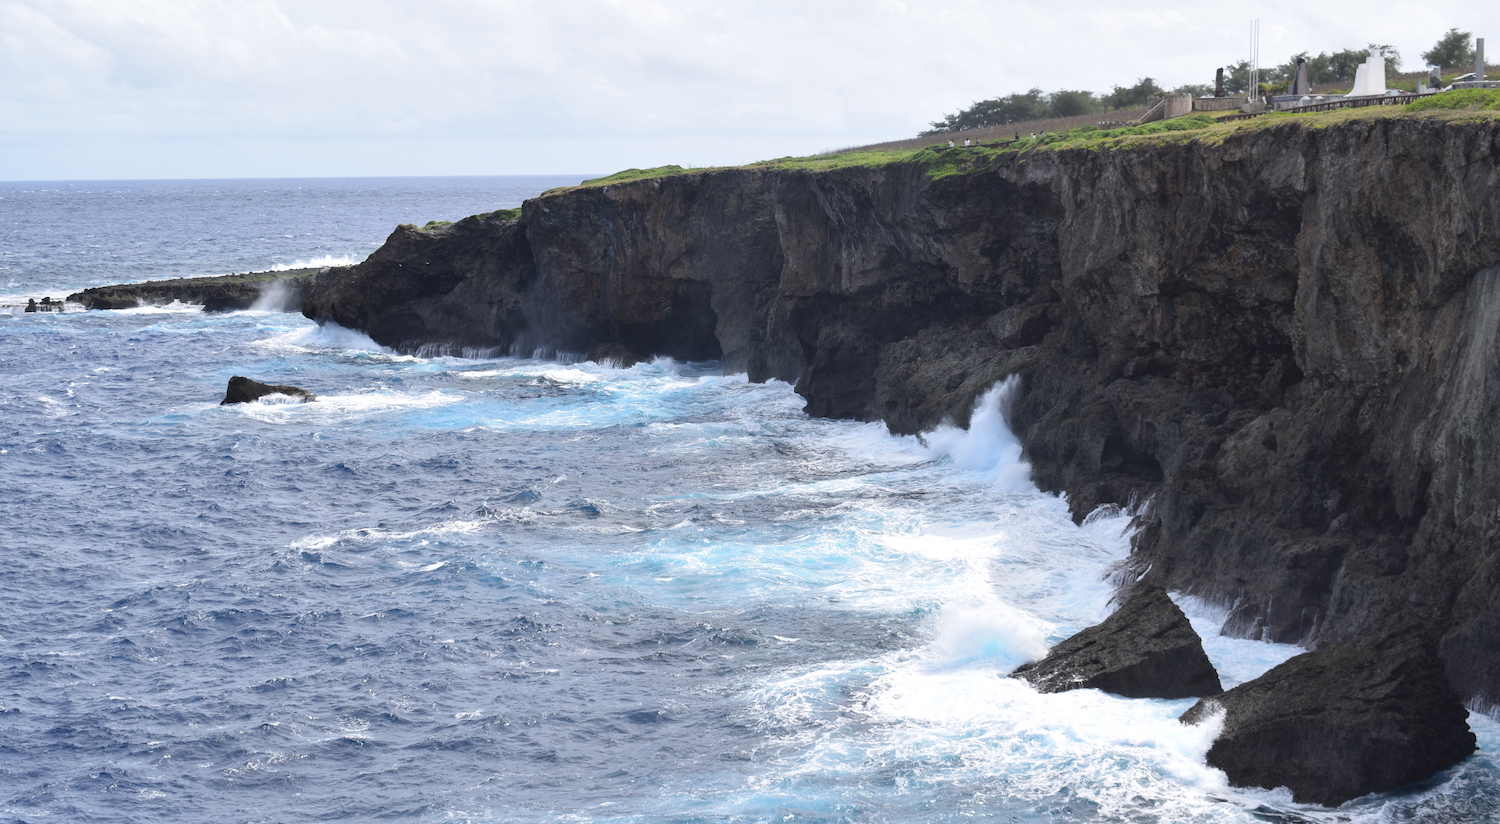 Banzai Cliff in Saipan in Northern Mariana Islands